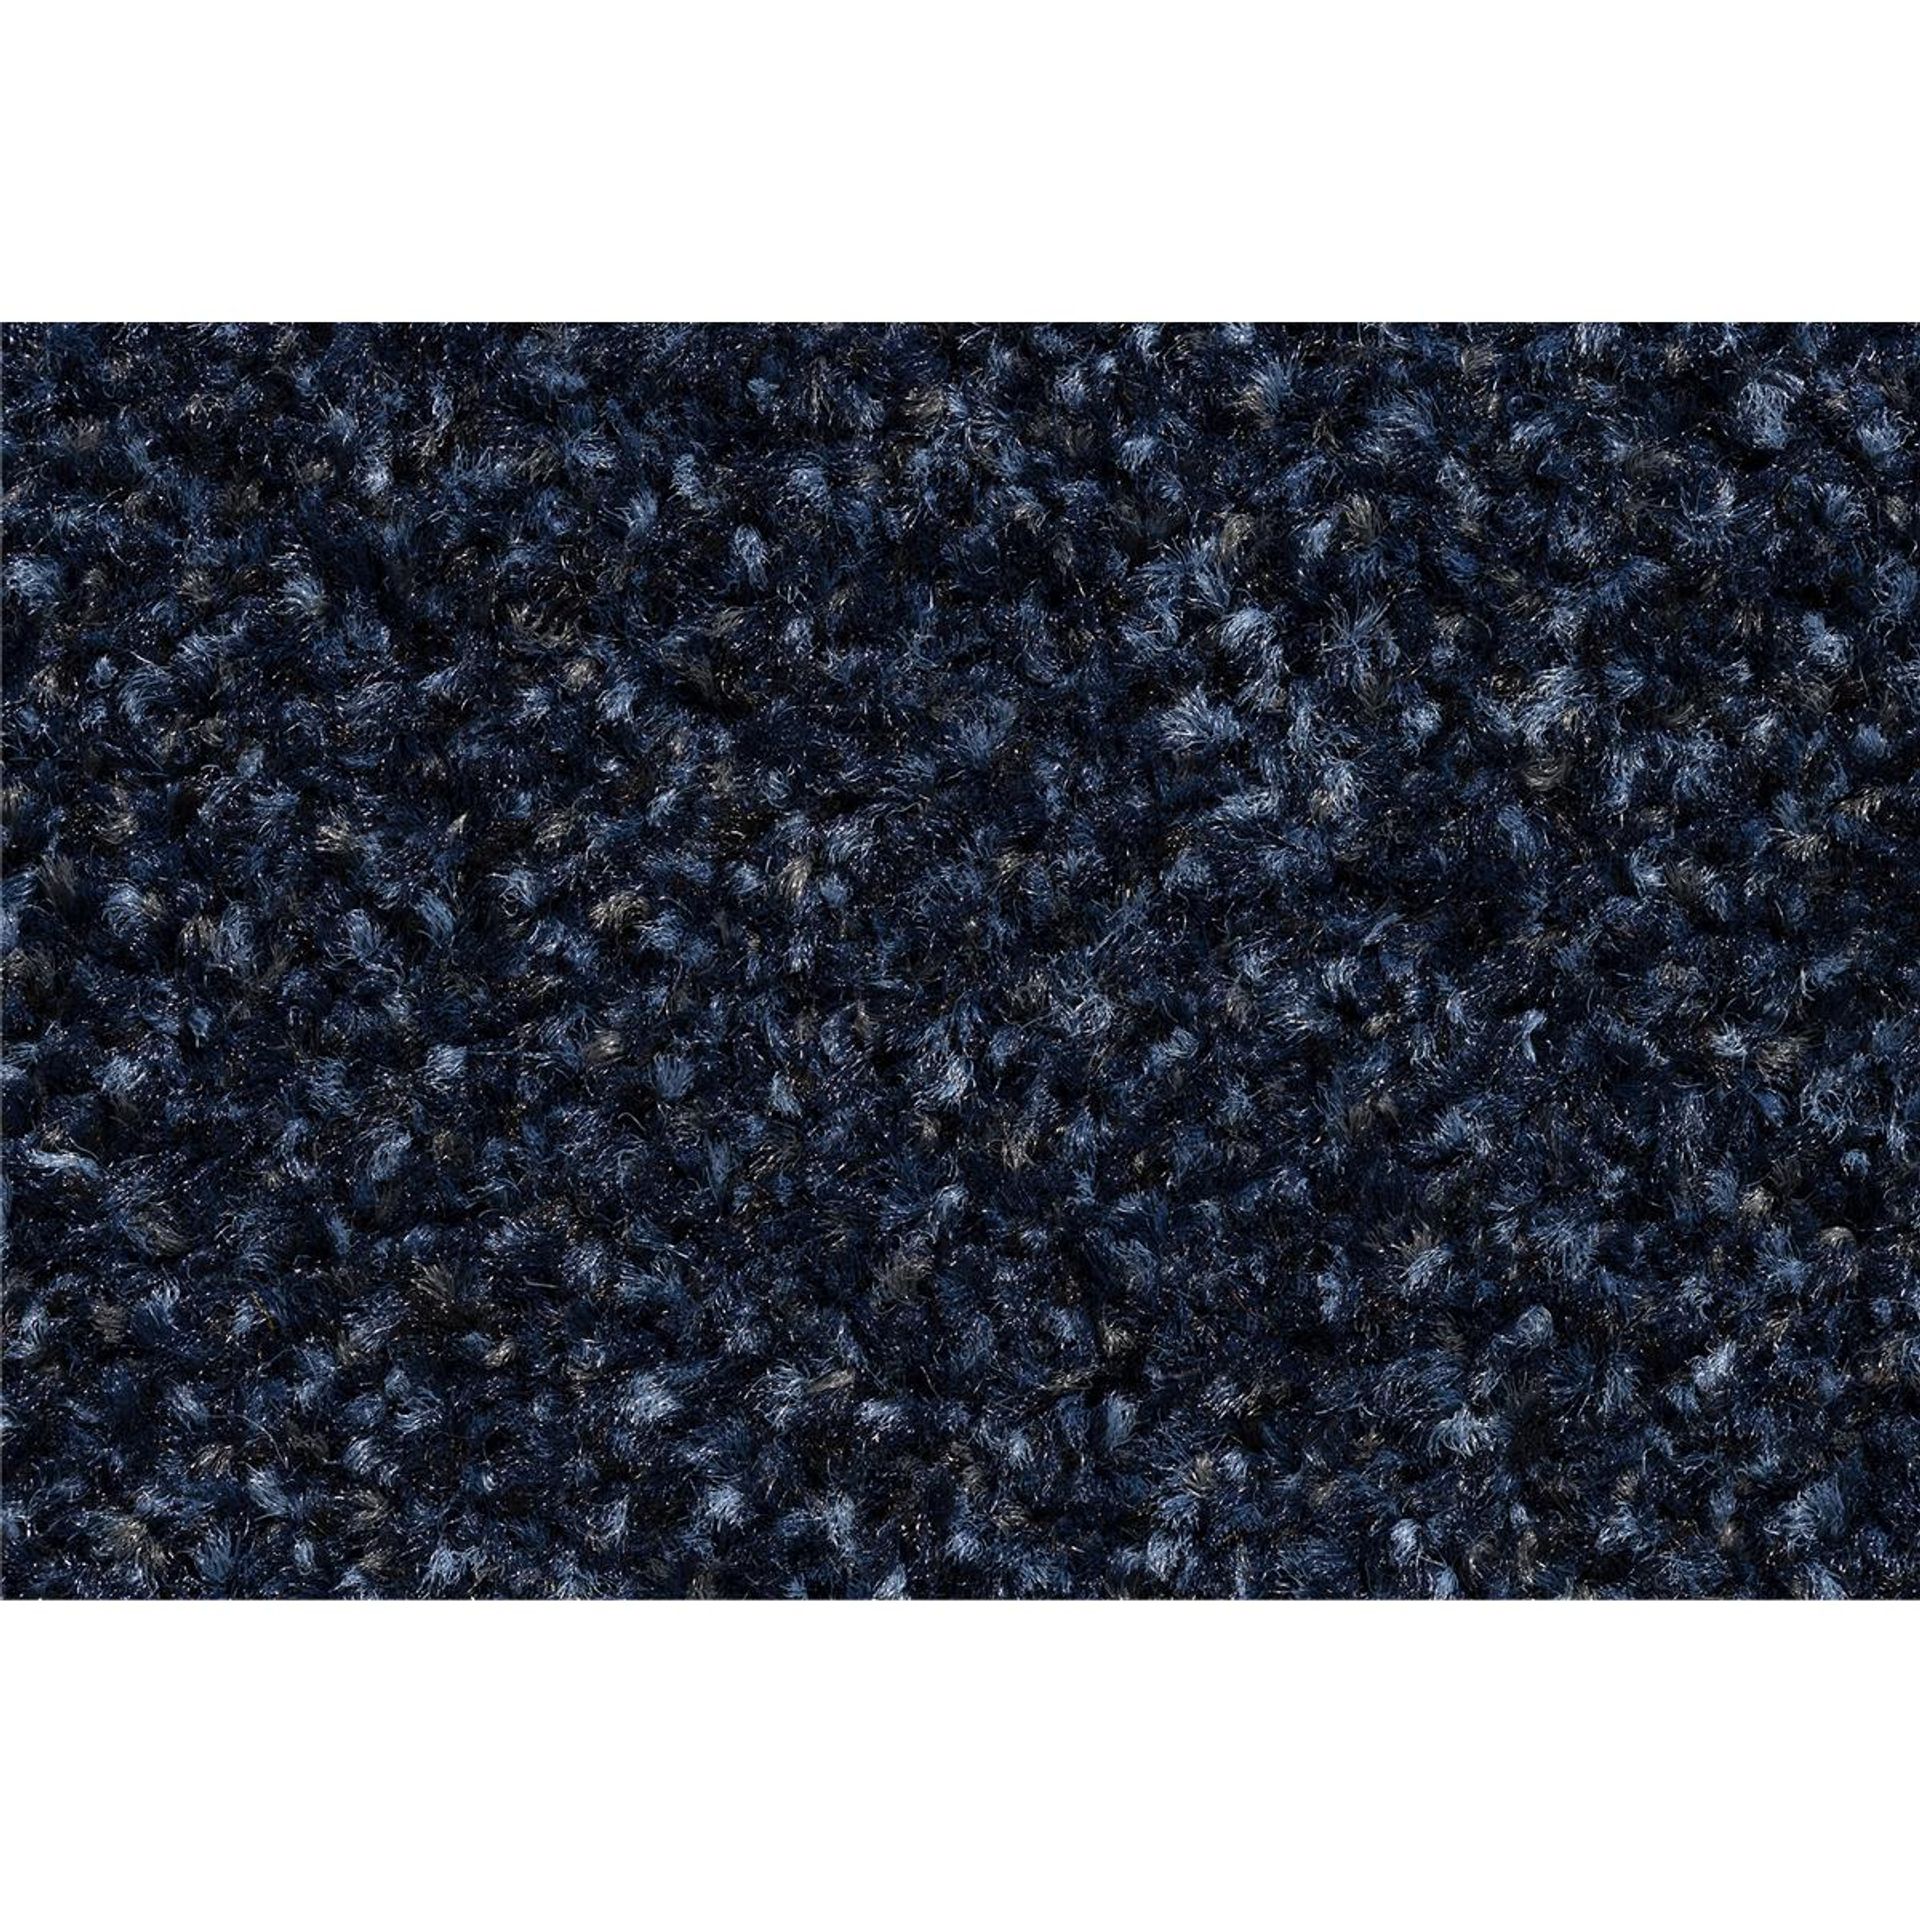 Sauberlauf Innen Portal 011 cobalt blue - Rollenbreite 200 cm